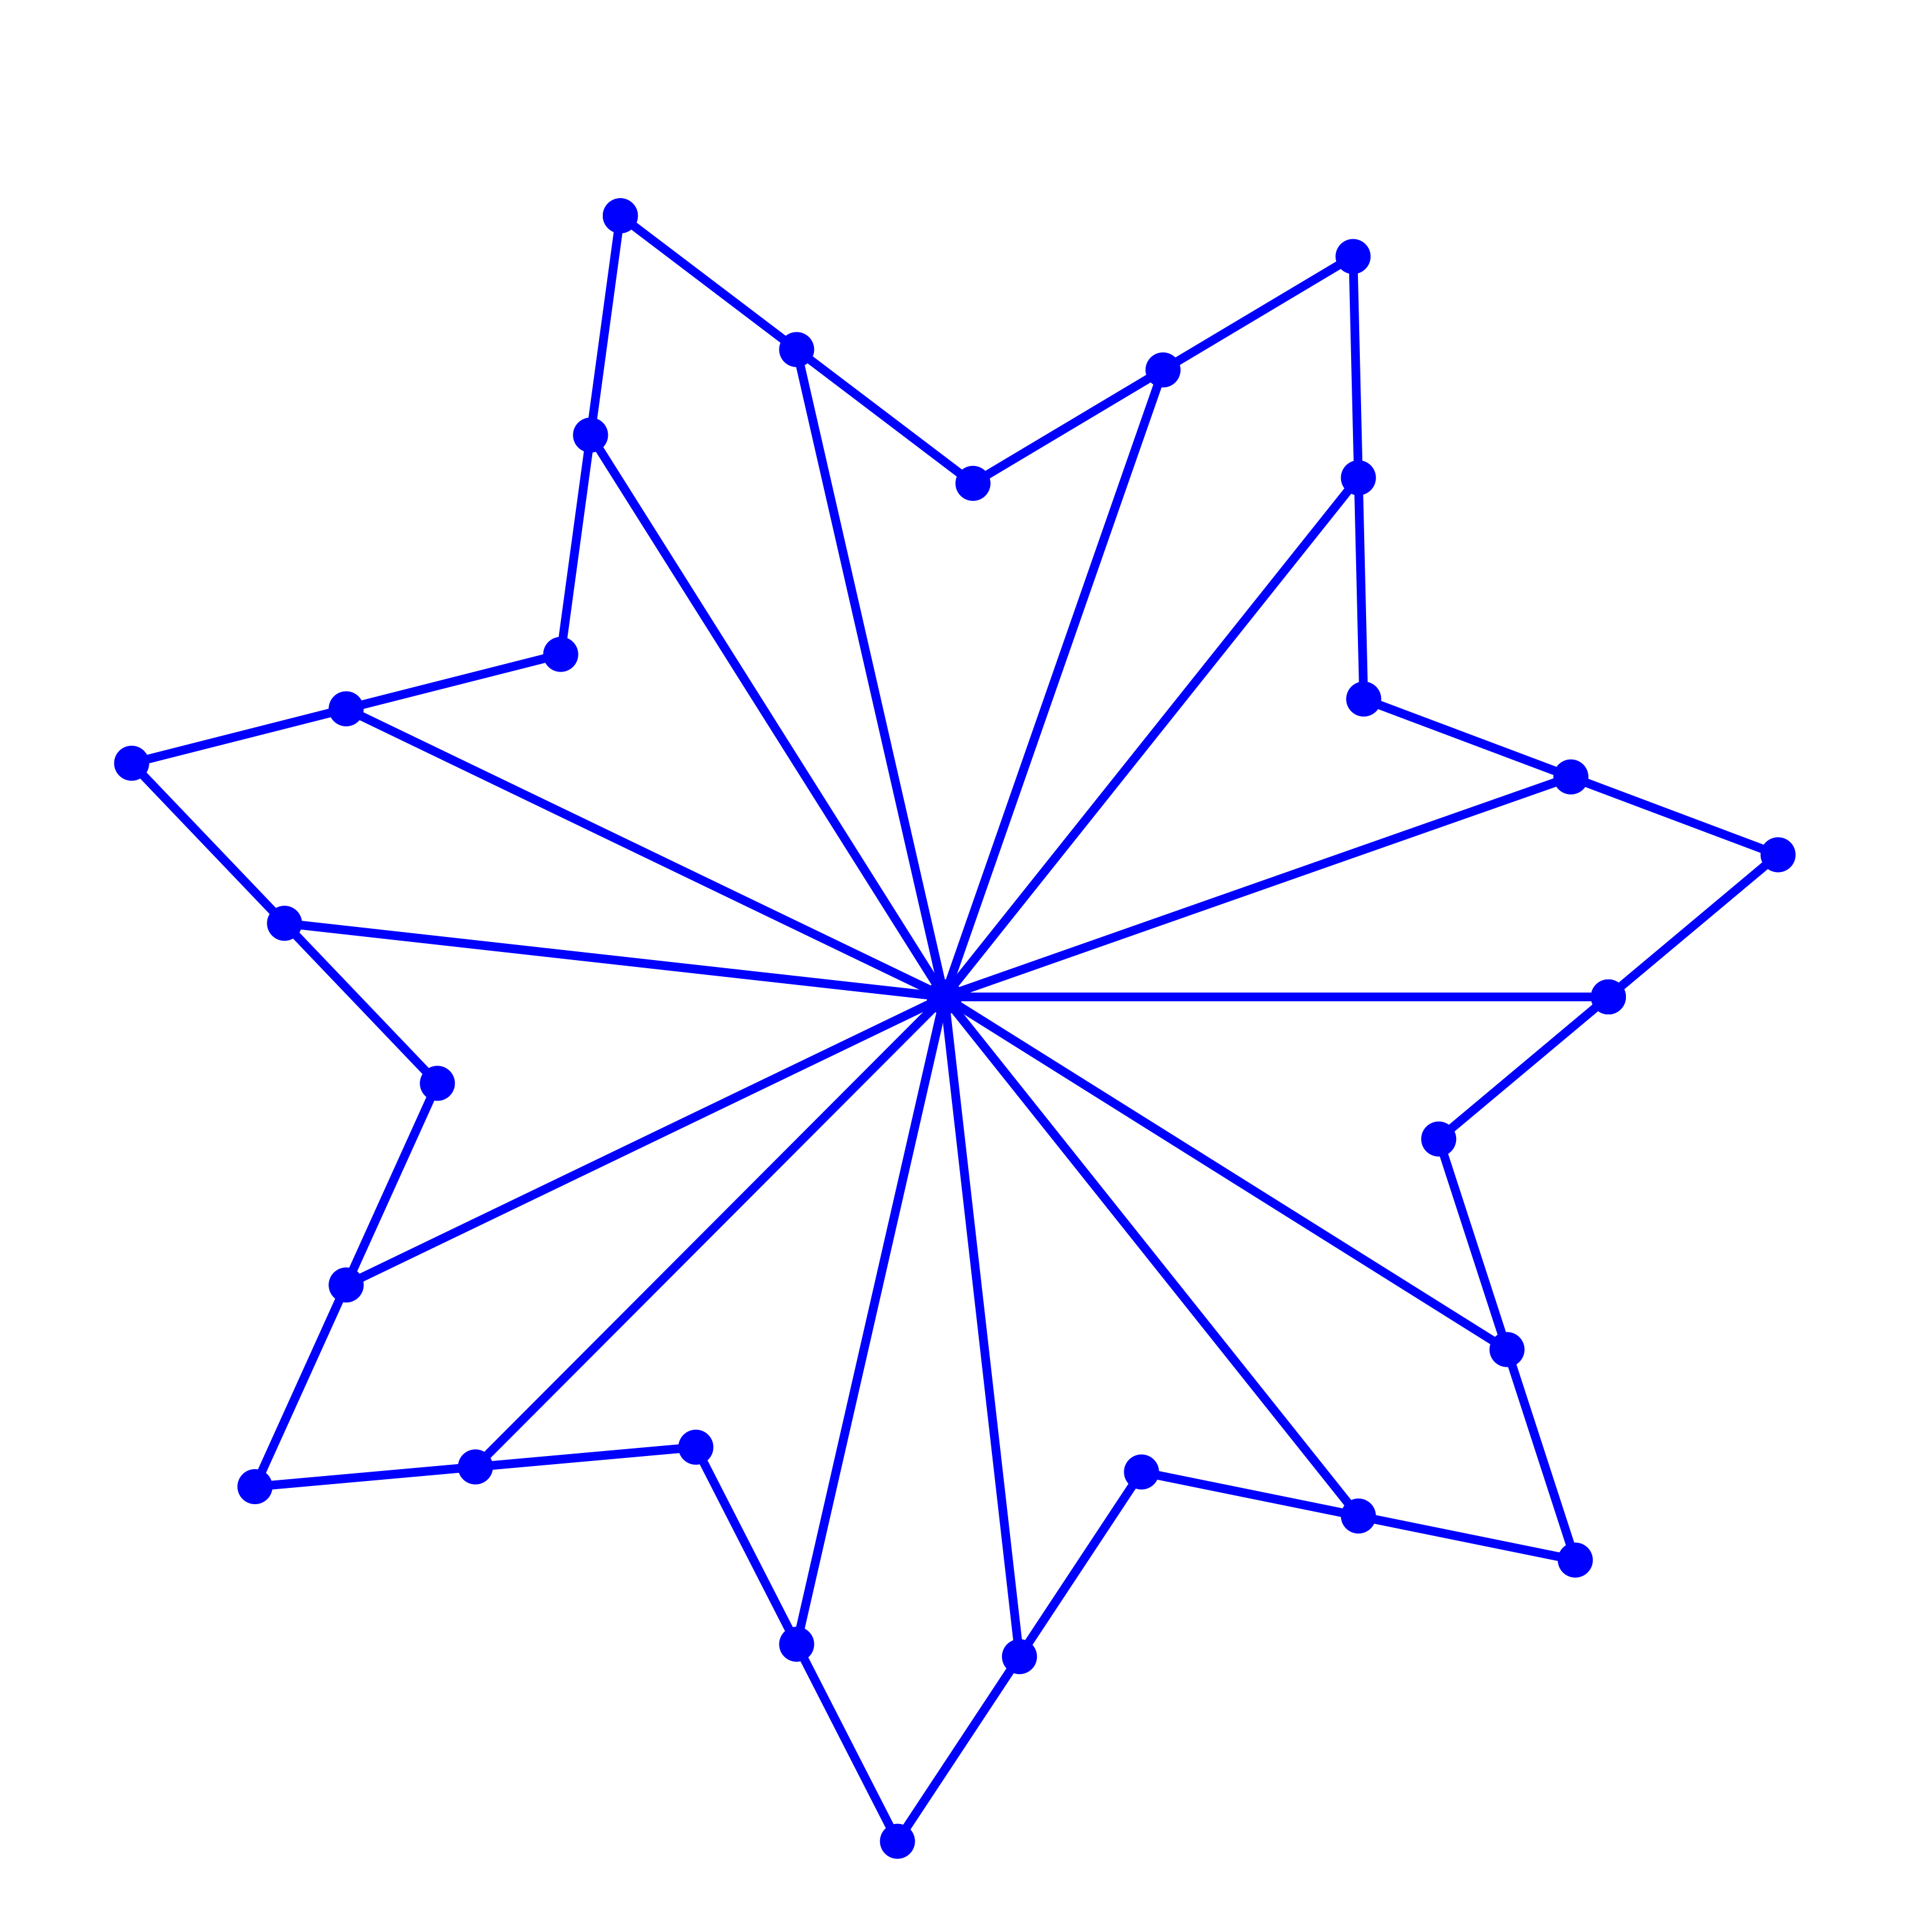 Ein Bild, das Kunst, Symmetrie, Stern, Reihe enthält.

Automatisch generierte Beschreibung